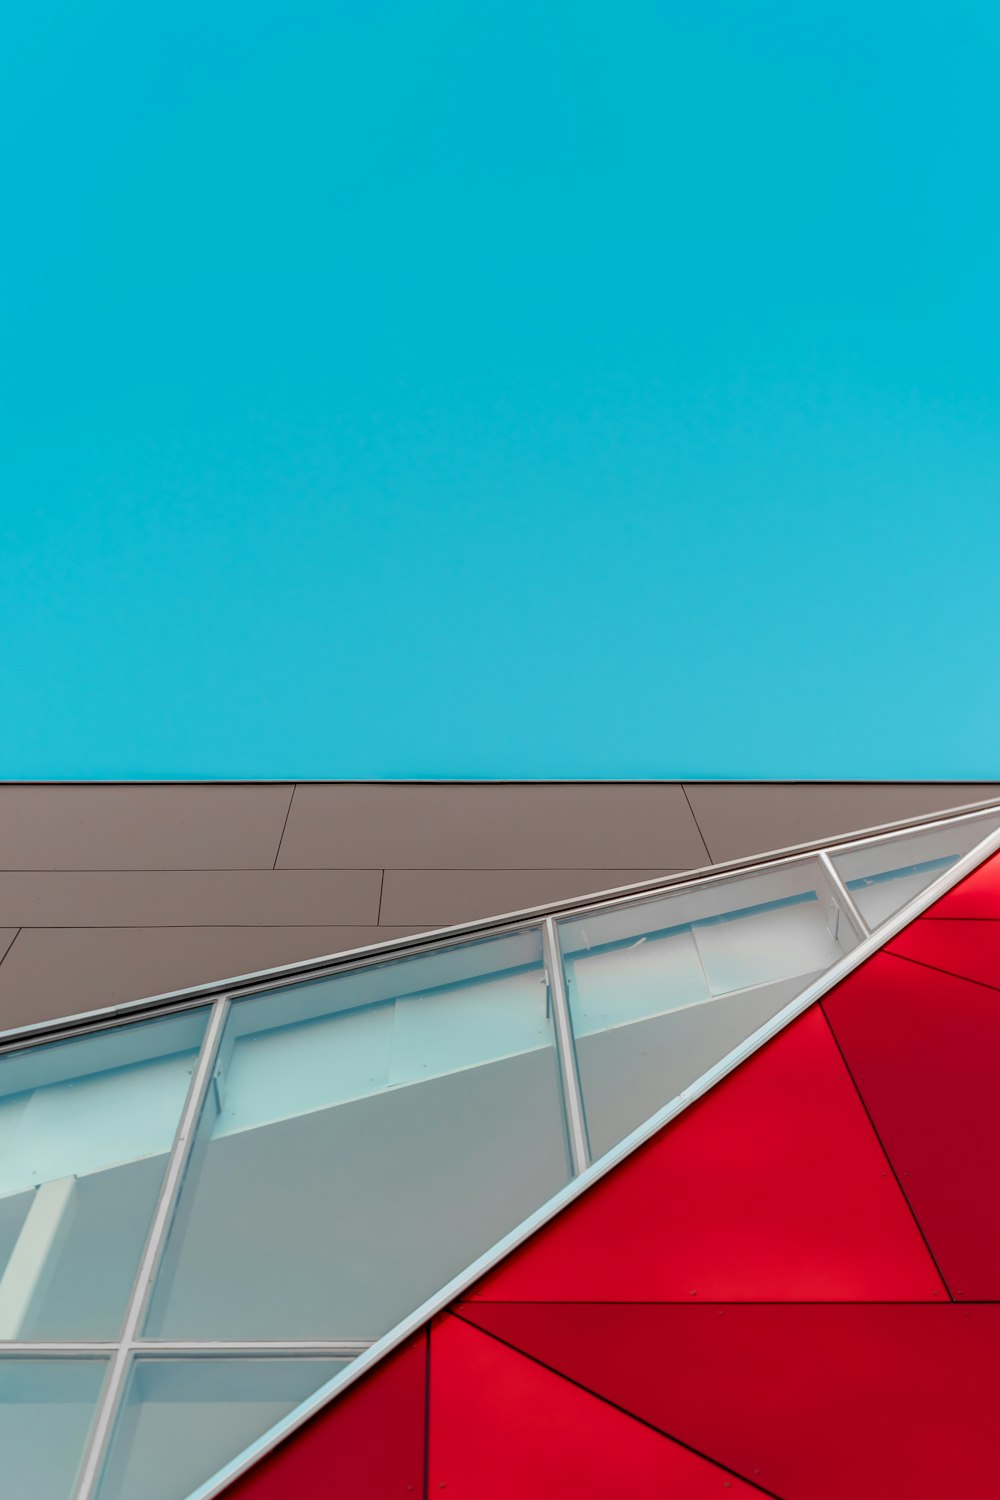 Fotografia de foco raso do edifício da parede do painel de vidro vermelho, marrom e branco sob o céu azul